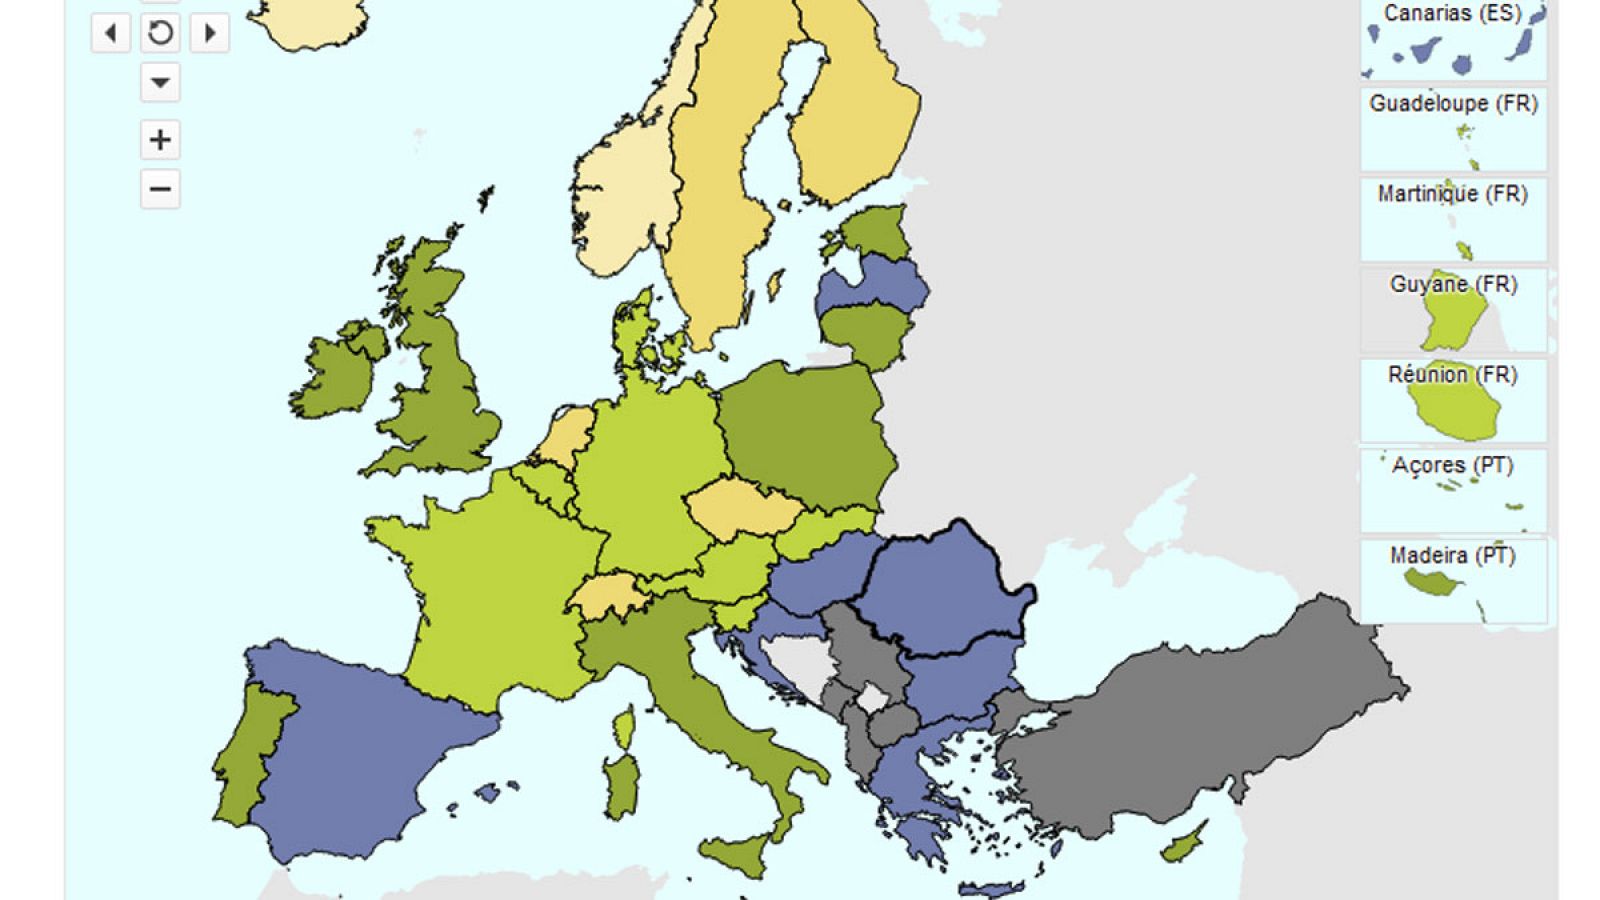 Mapa del riesgo de exclusión social en Europa